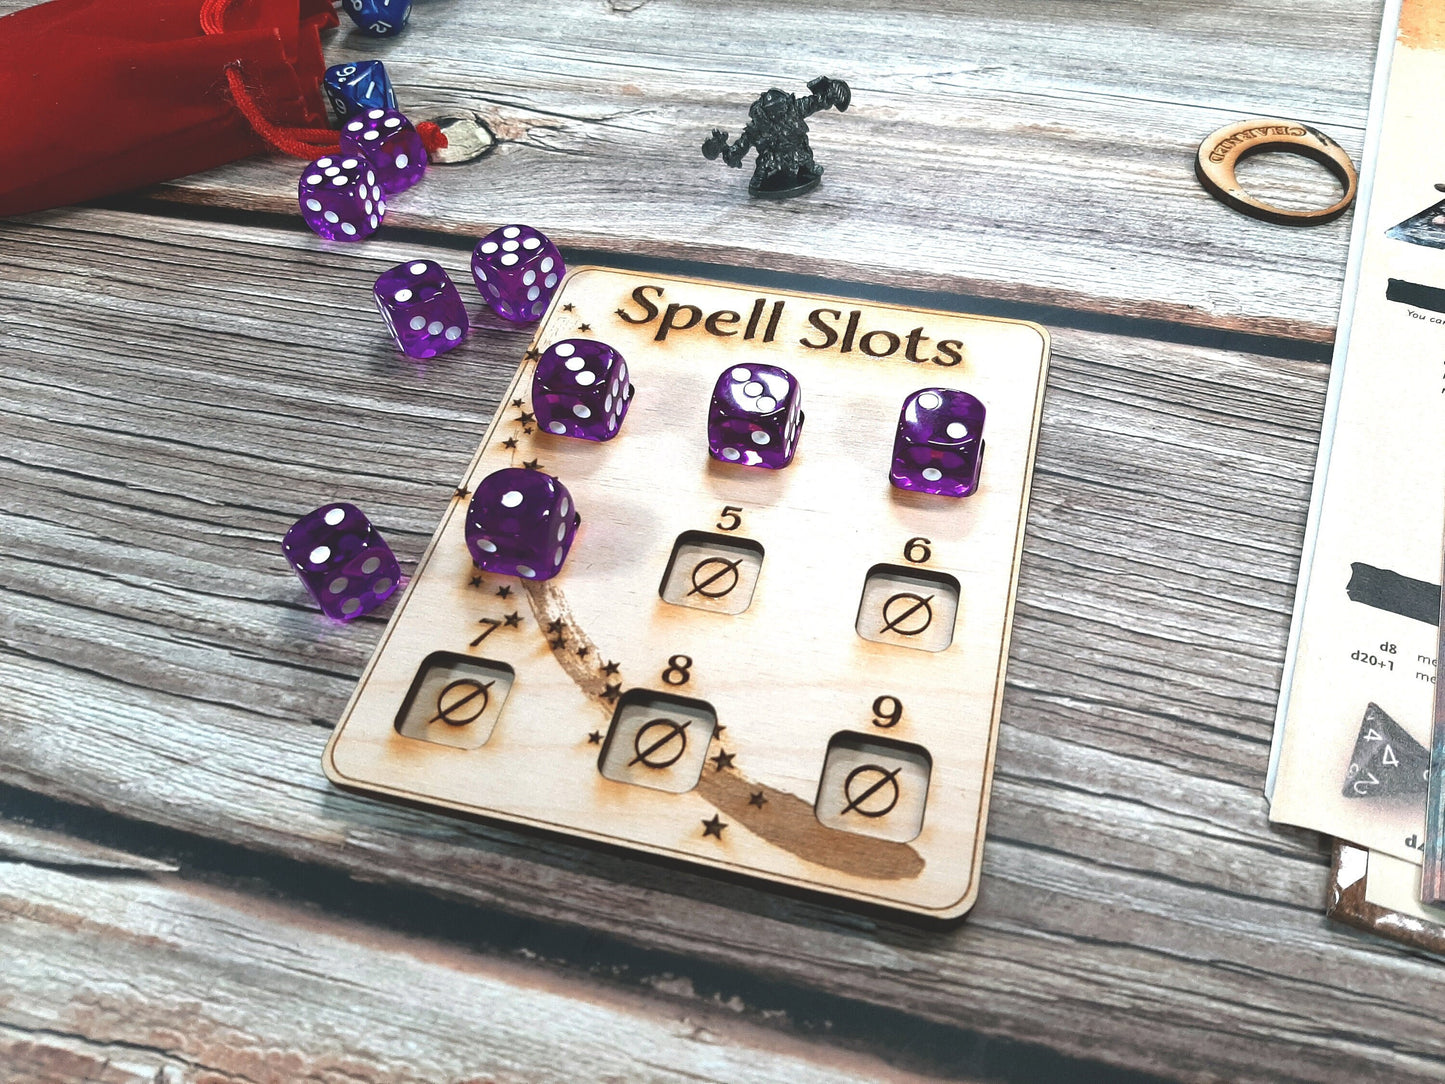 Spell Slot Tracker - RPG Game accessory for spell casting classes - D&D